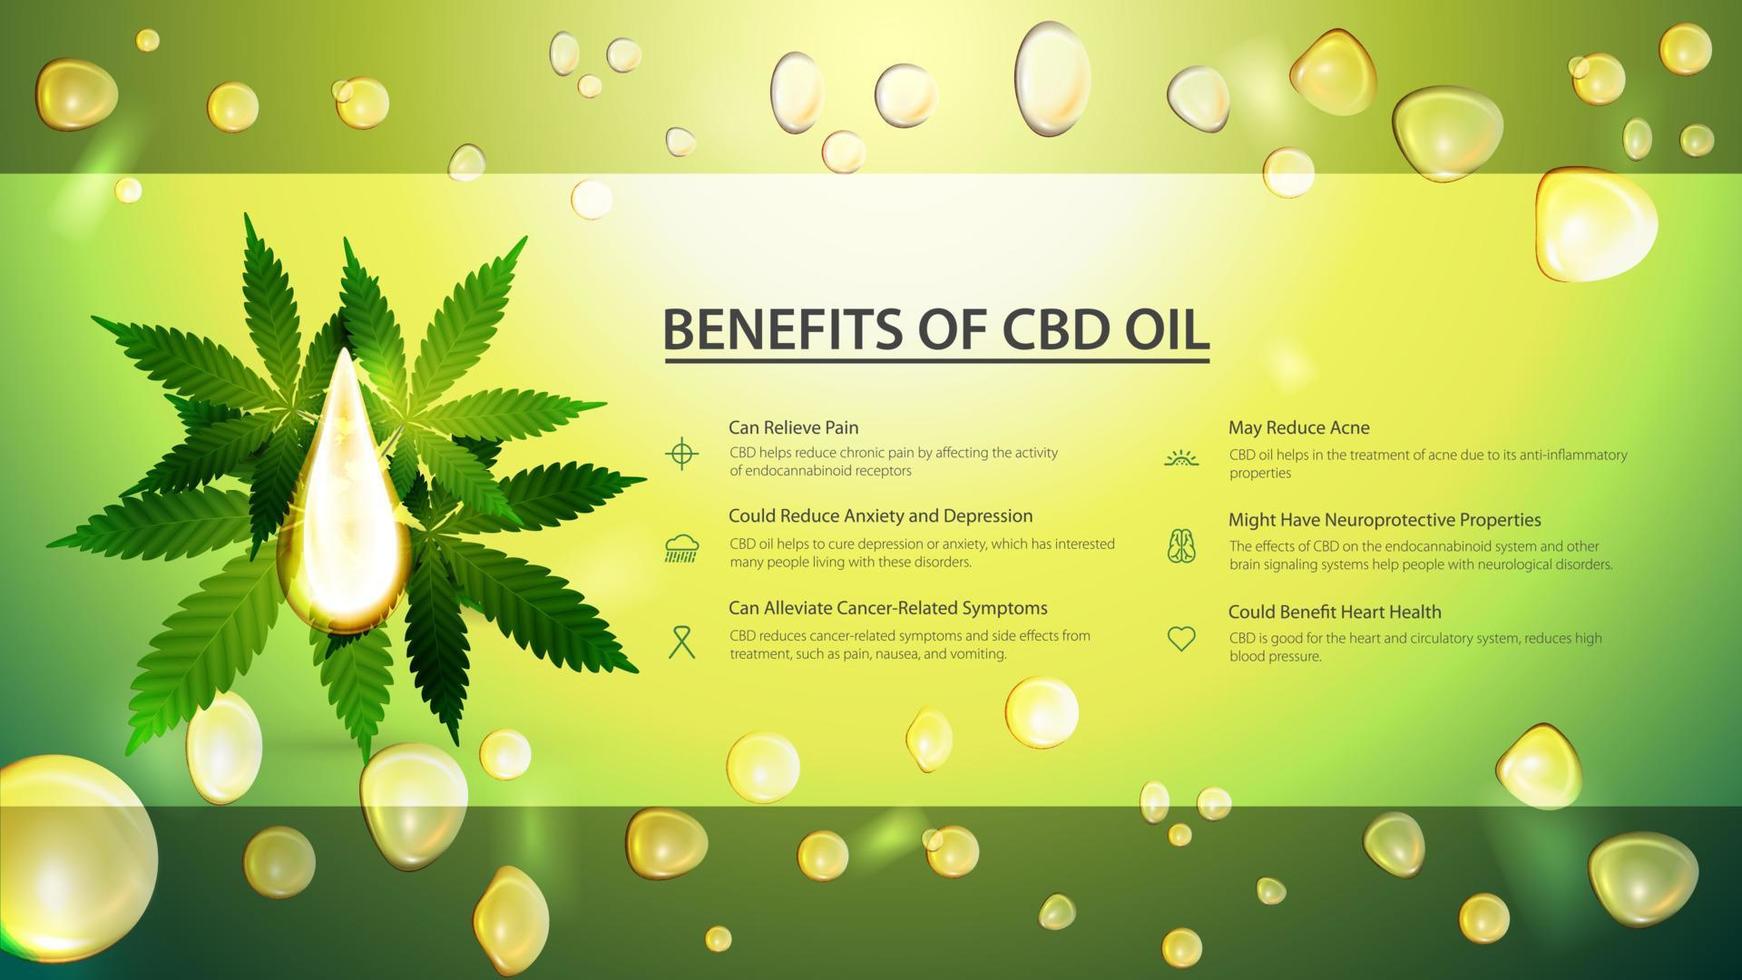 grön banderoll med droppe cbd-olja och gröna blad av cannabis på bakgrund av oljedroppar. medicinska fördelar med användning av cbd-olja. vektor